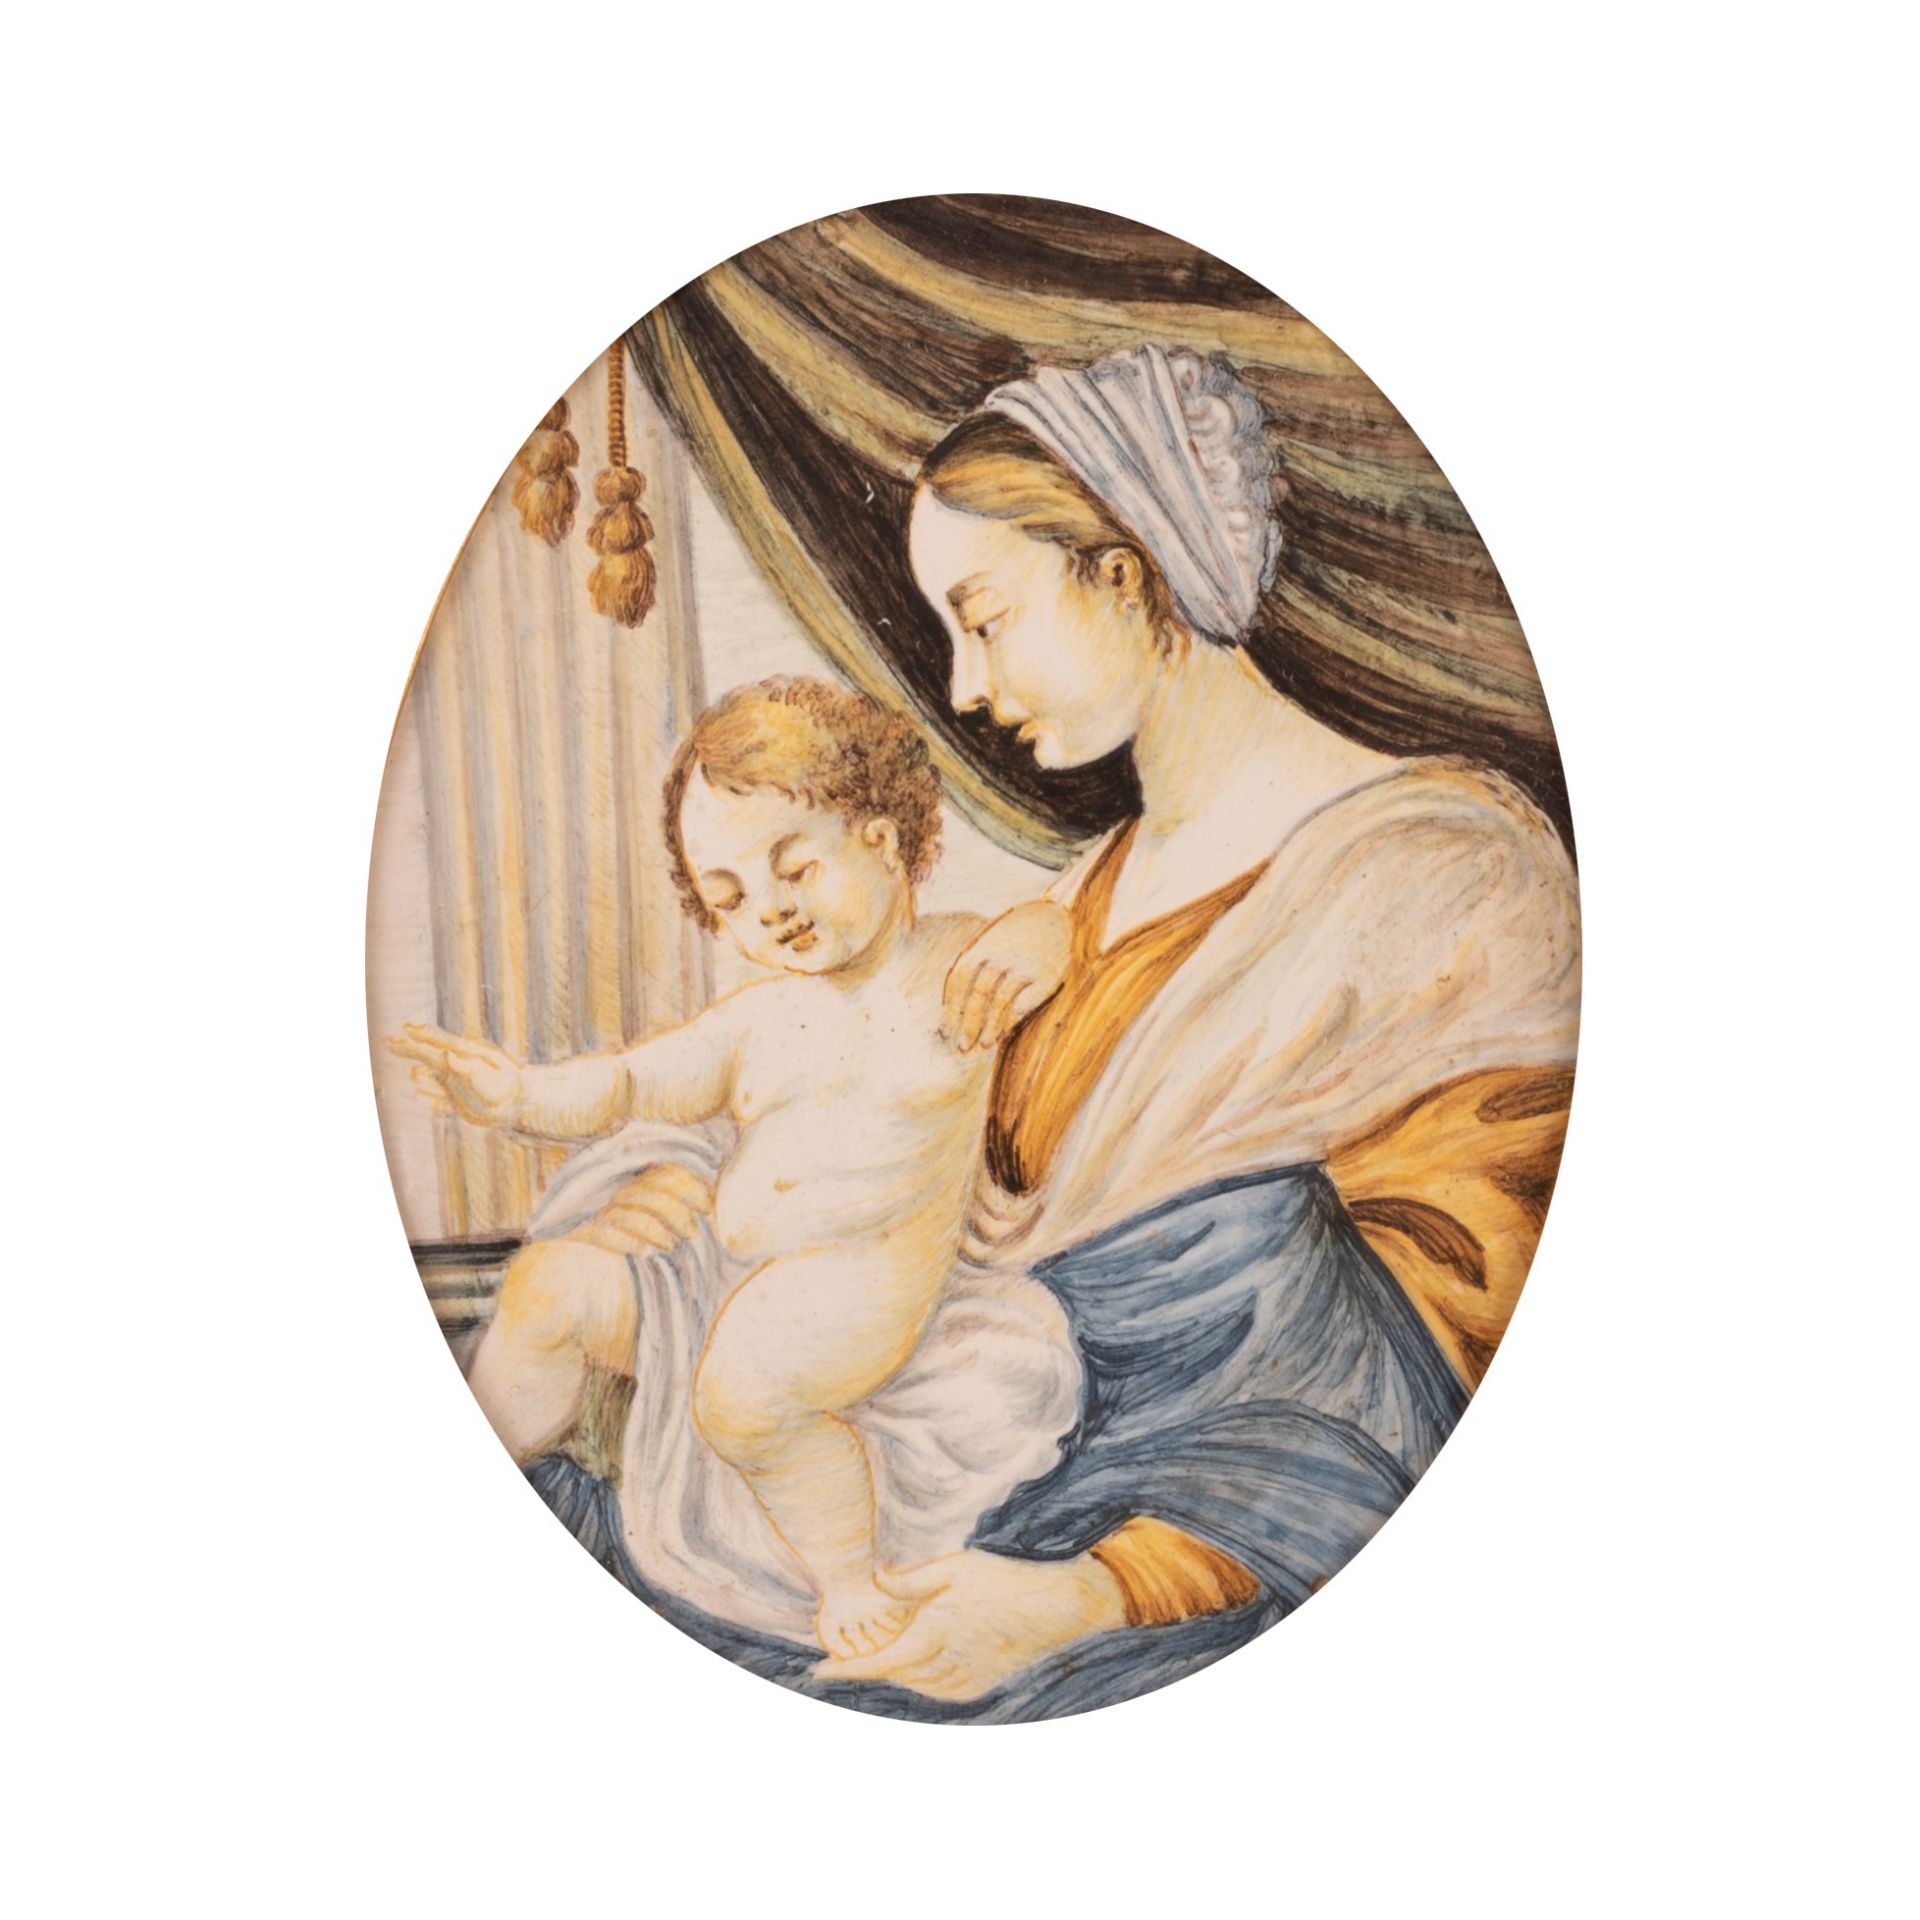 Mattonella ovale in maiolica raffigurante la Madonna con il Bambino Gesù